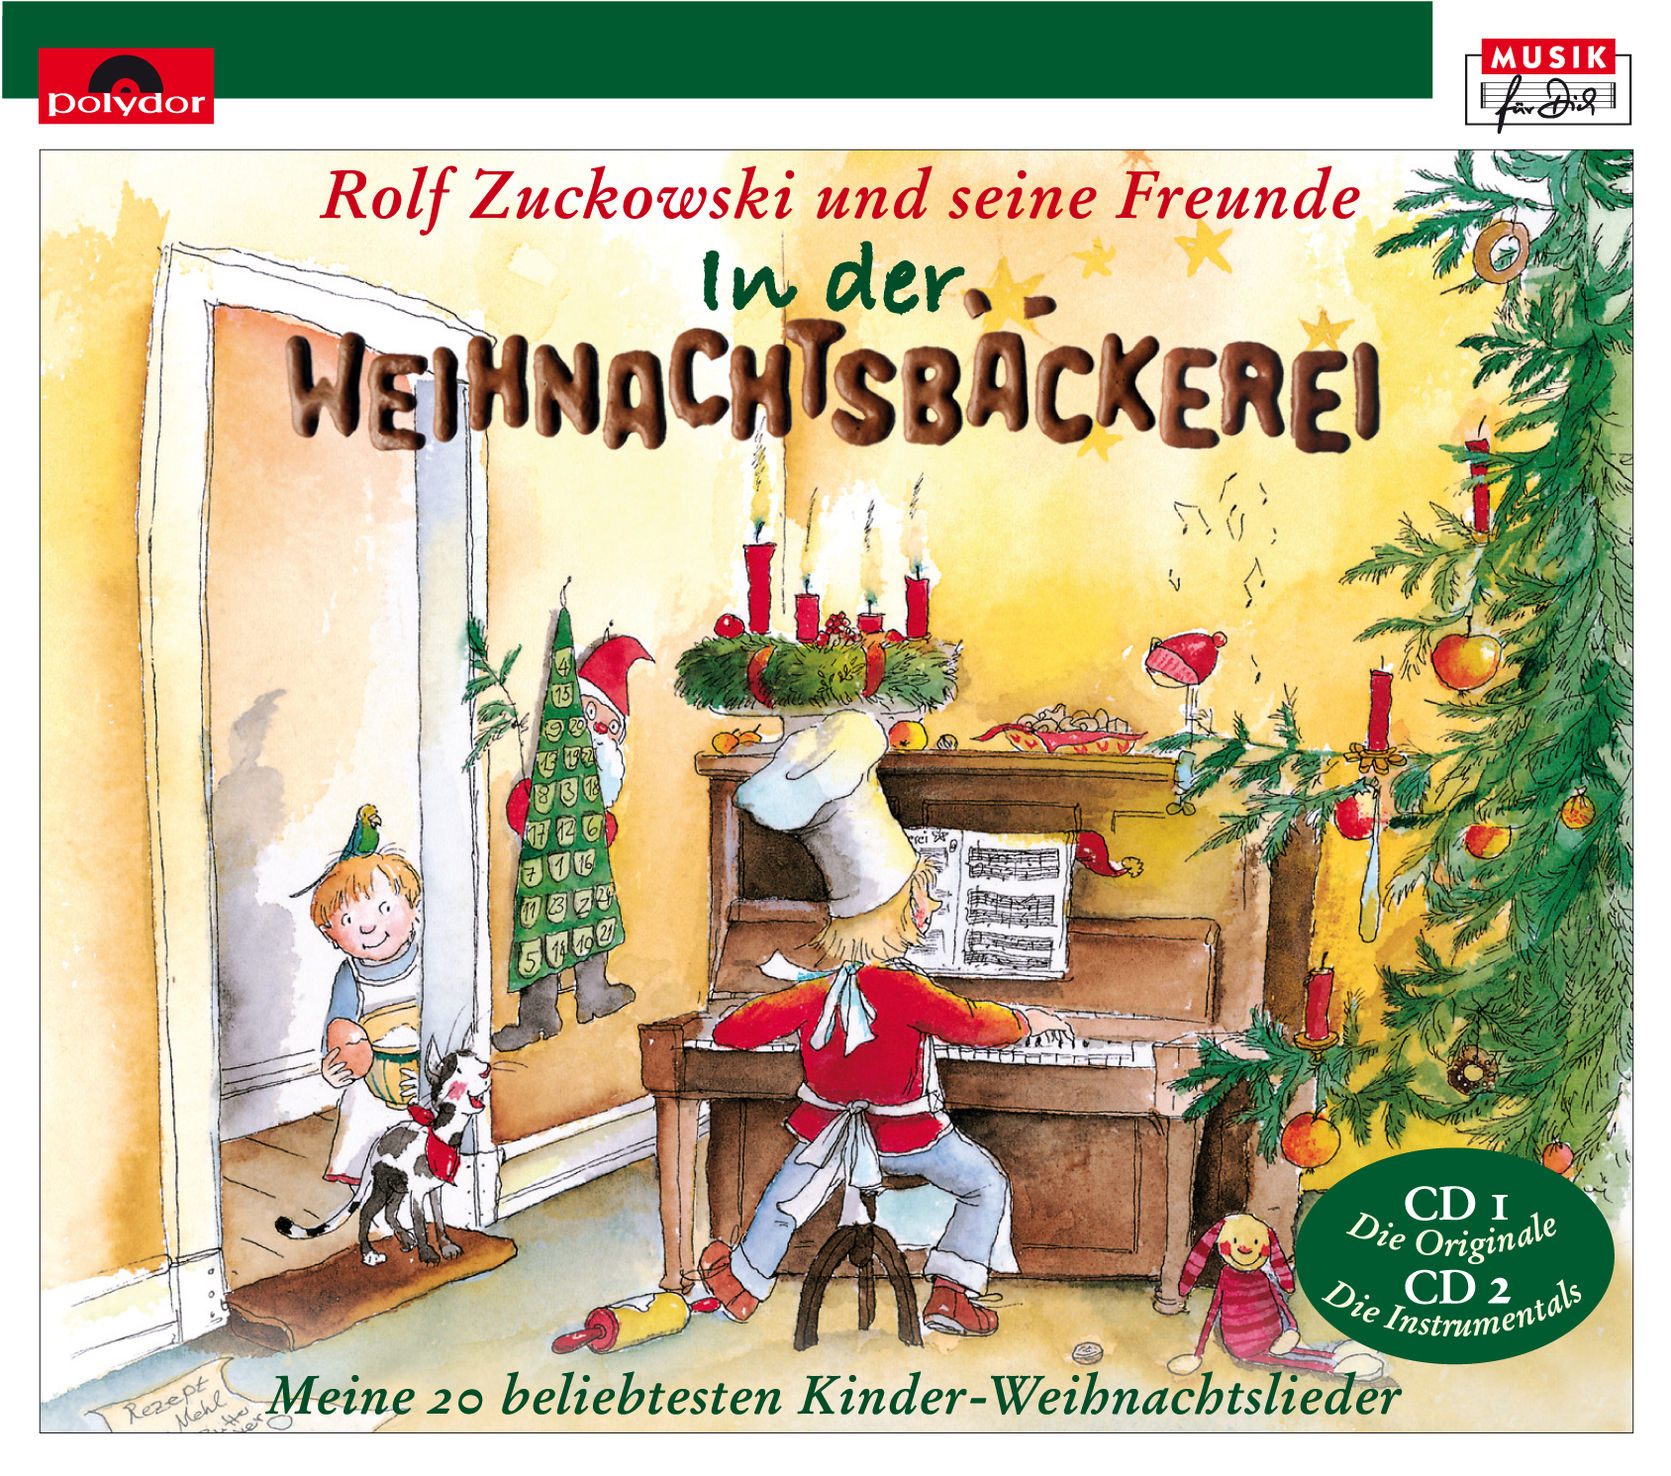 Musik-CD: In der Weihnachtsbäckerei von Rolf und seine Freunde | Weltbild.ch